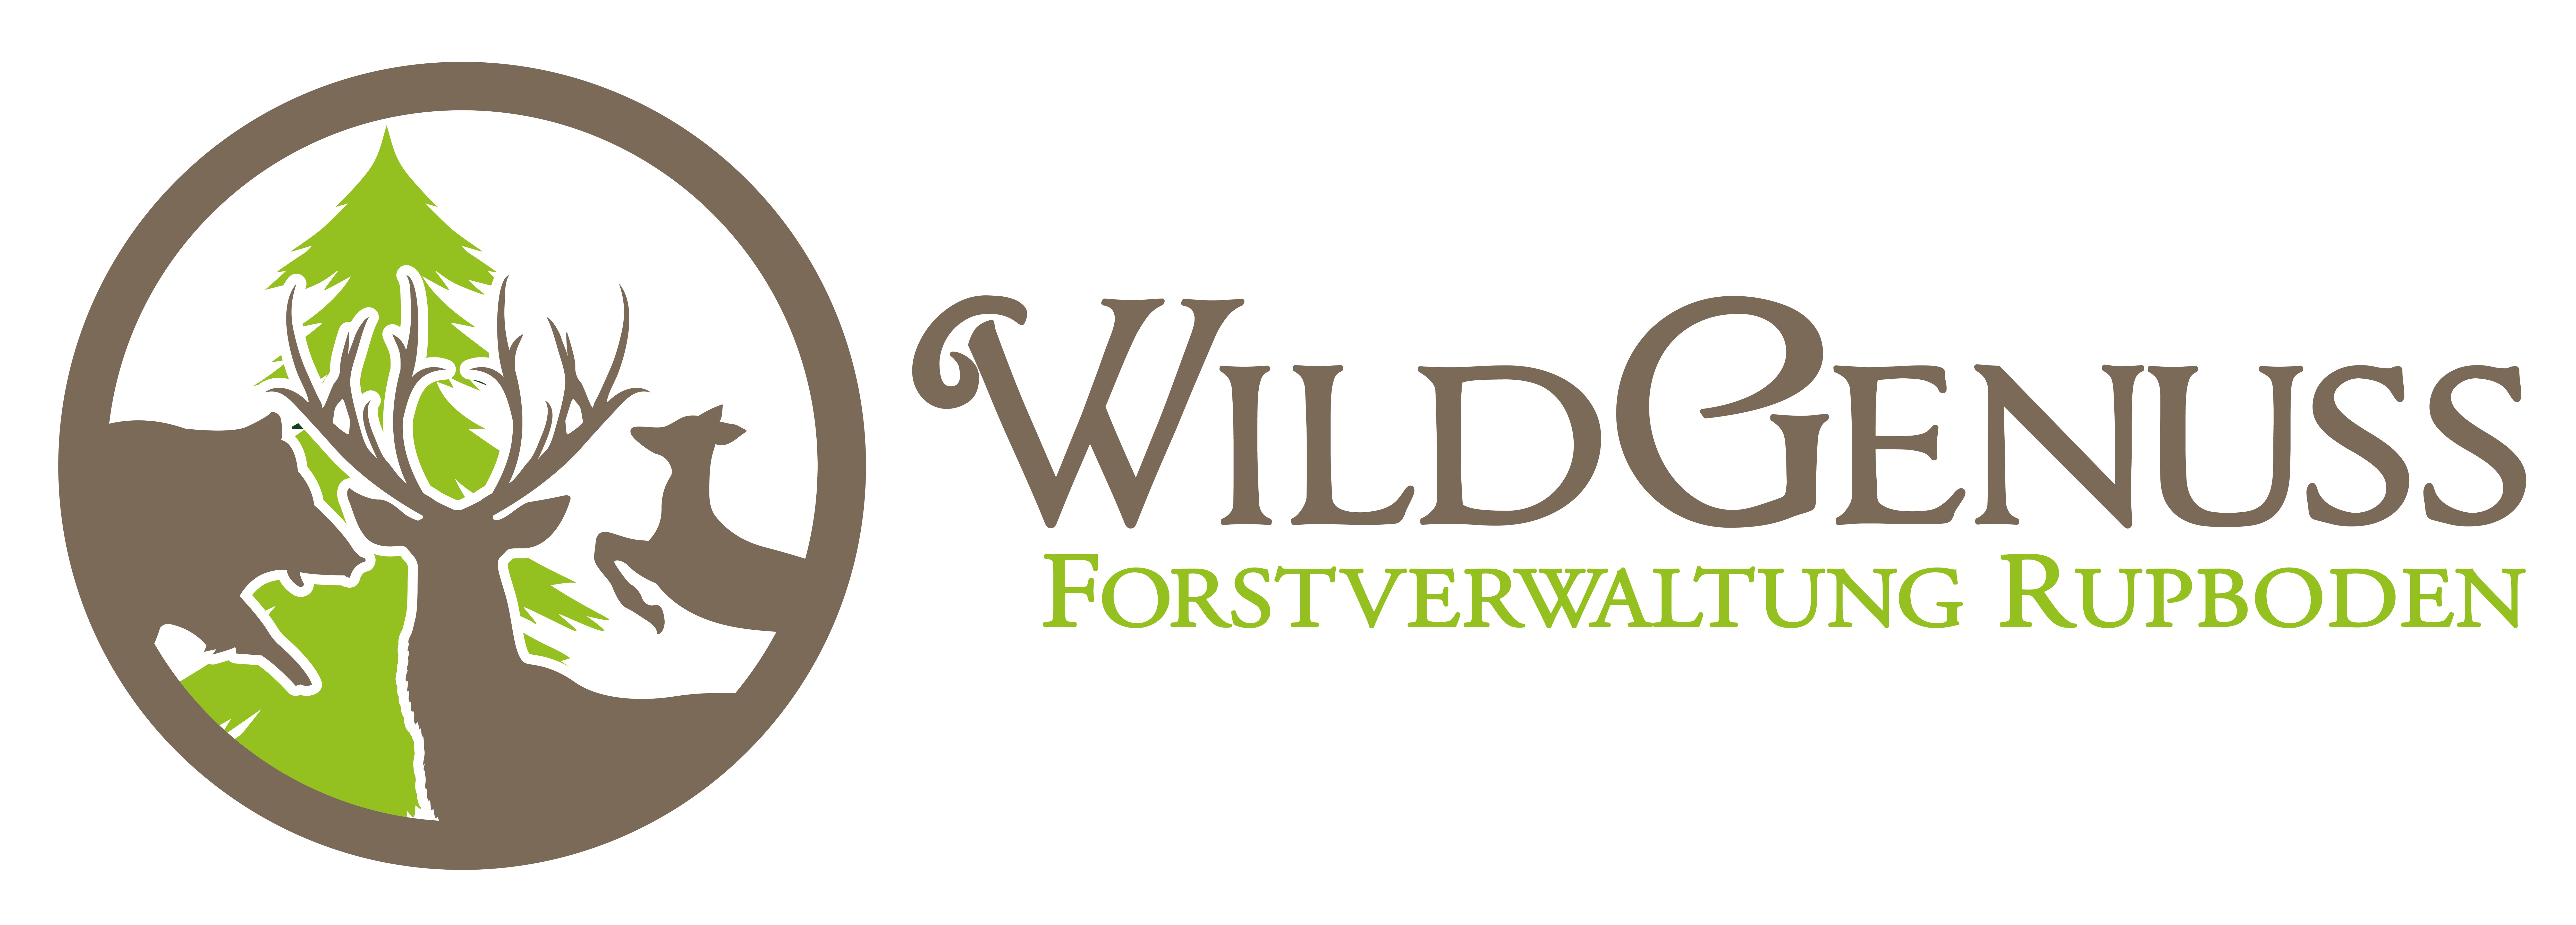 Wildgenuss - Forstverwaltung Rupboden